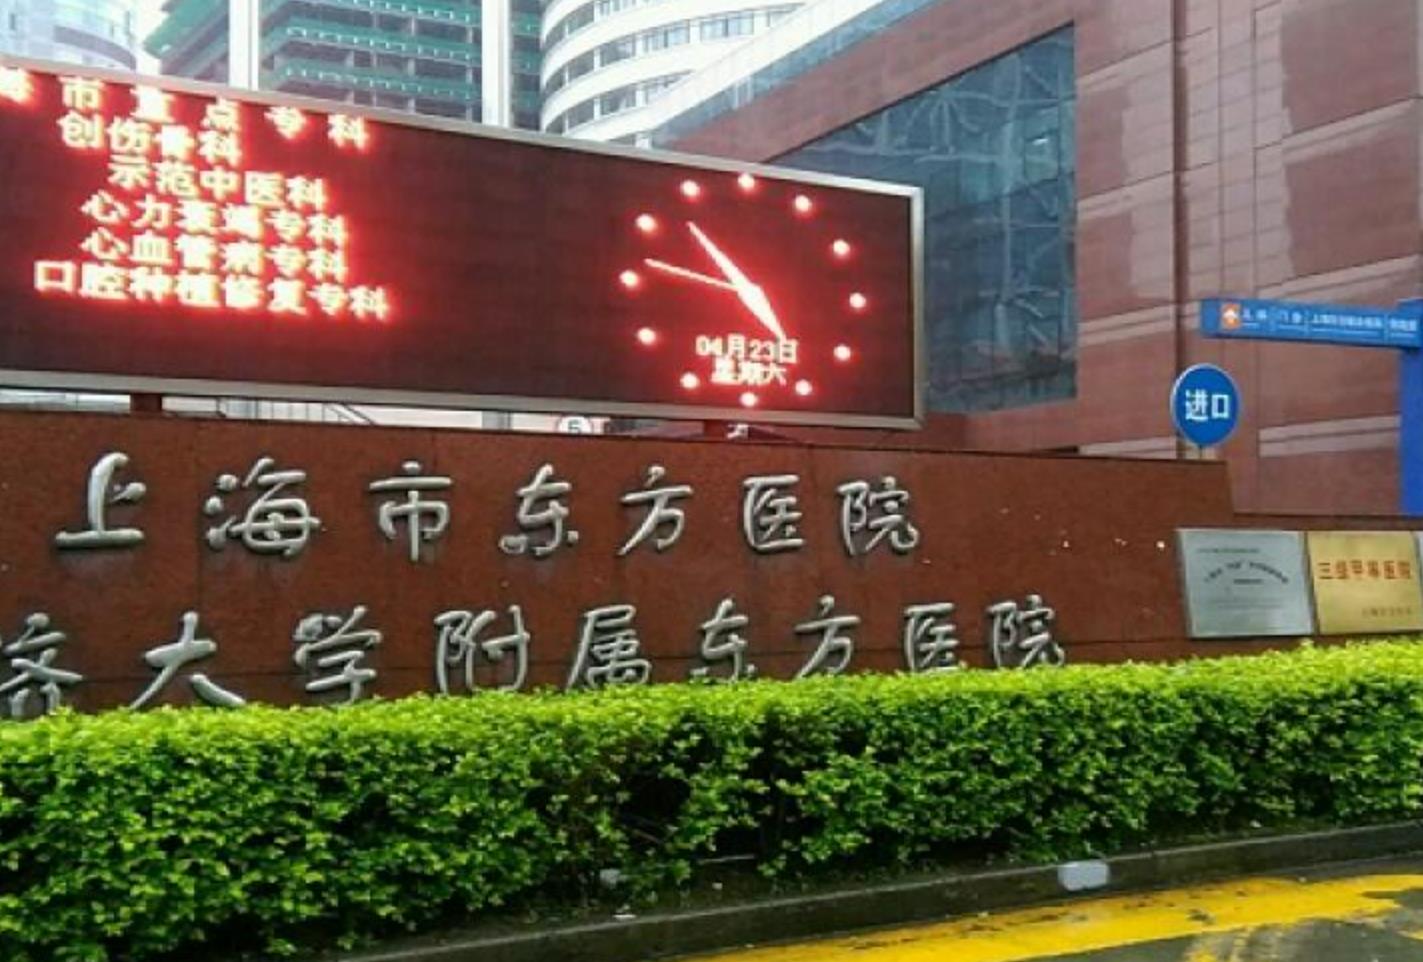 上海东方医院(北院).jpg